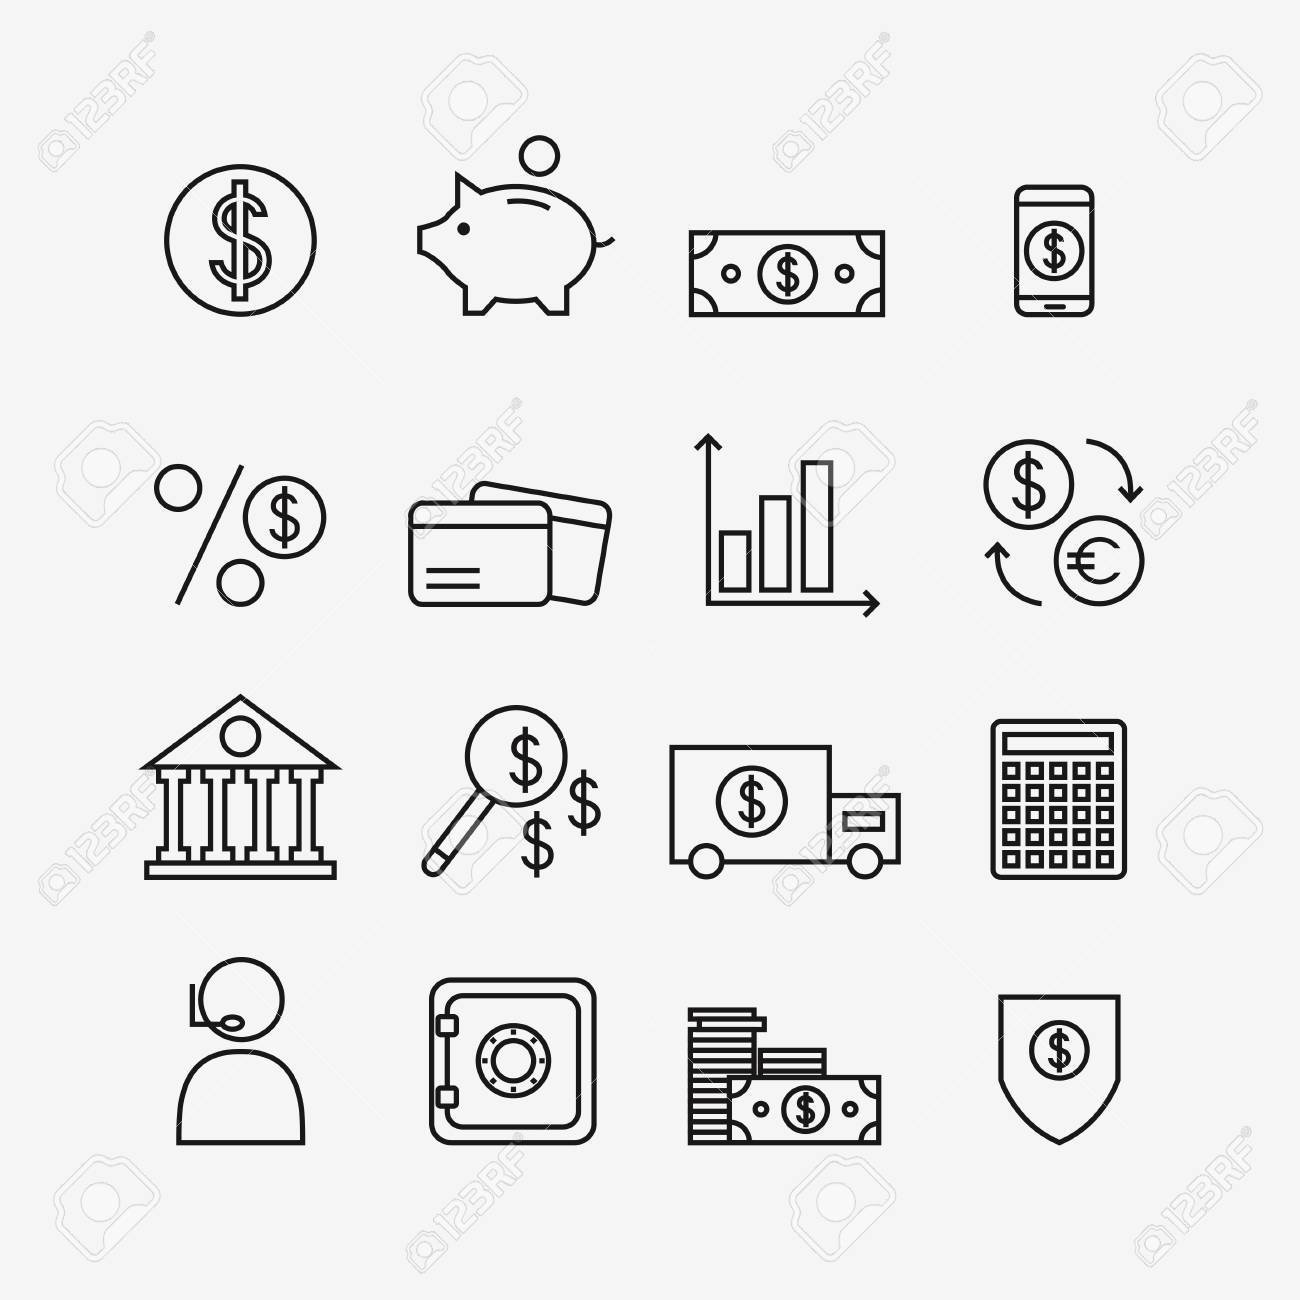 Finance Icons Isolated On Background Bank Icons Set Money Box